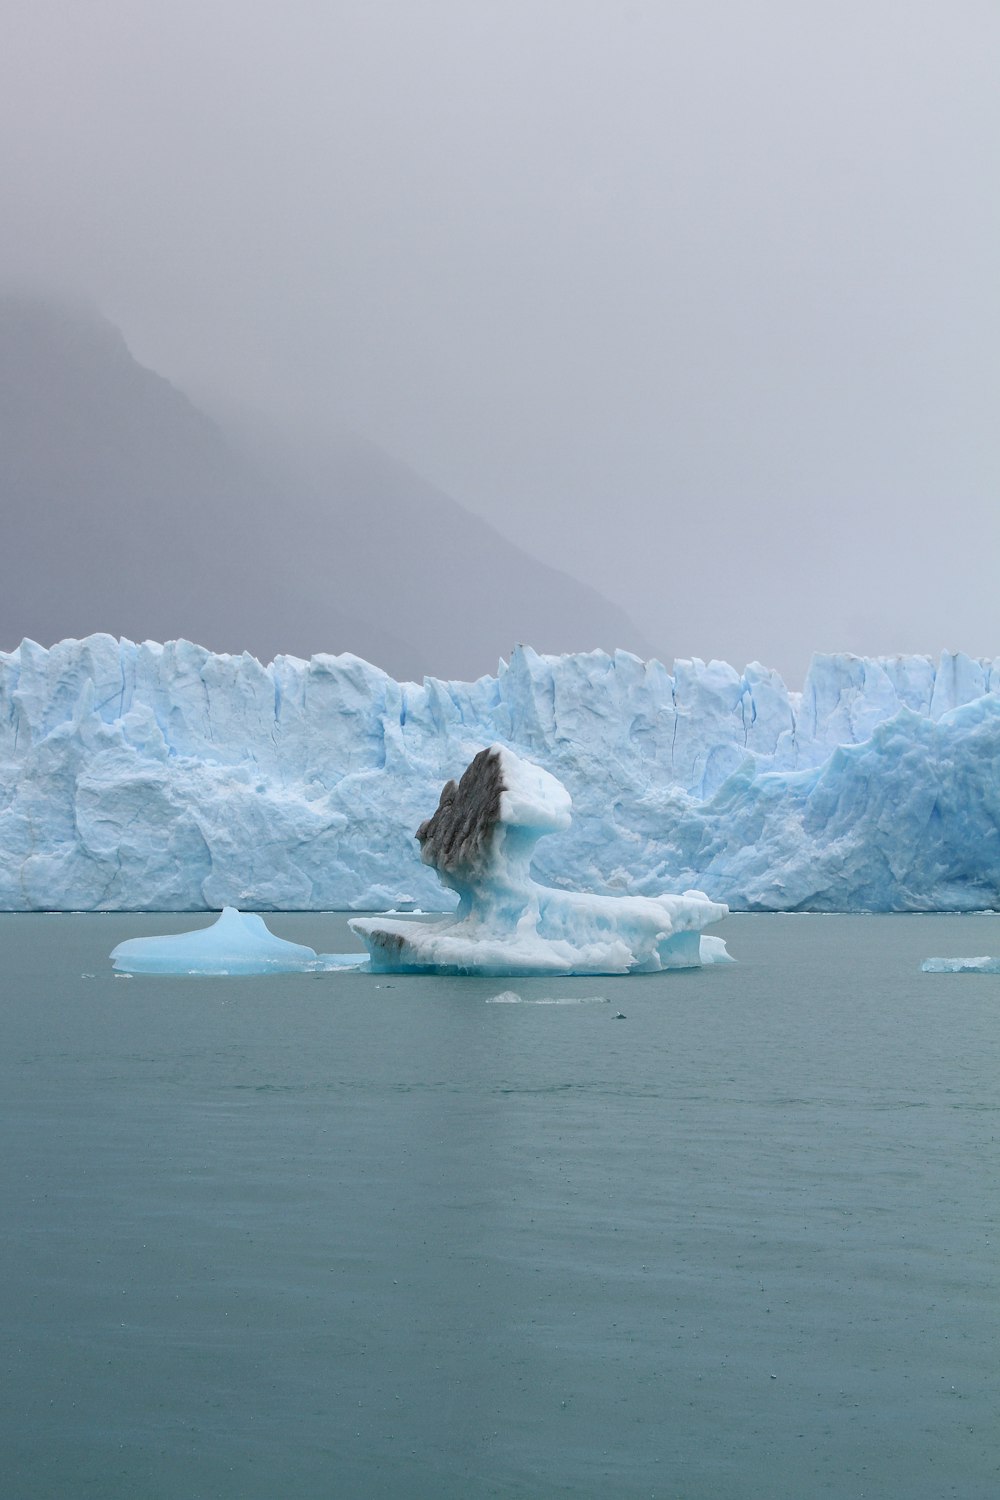 Eisberg auf Gewässer am Tag